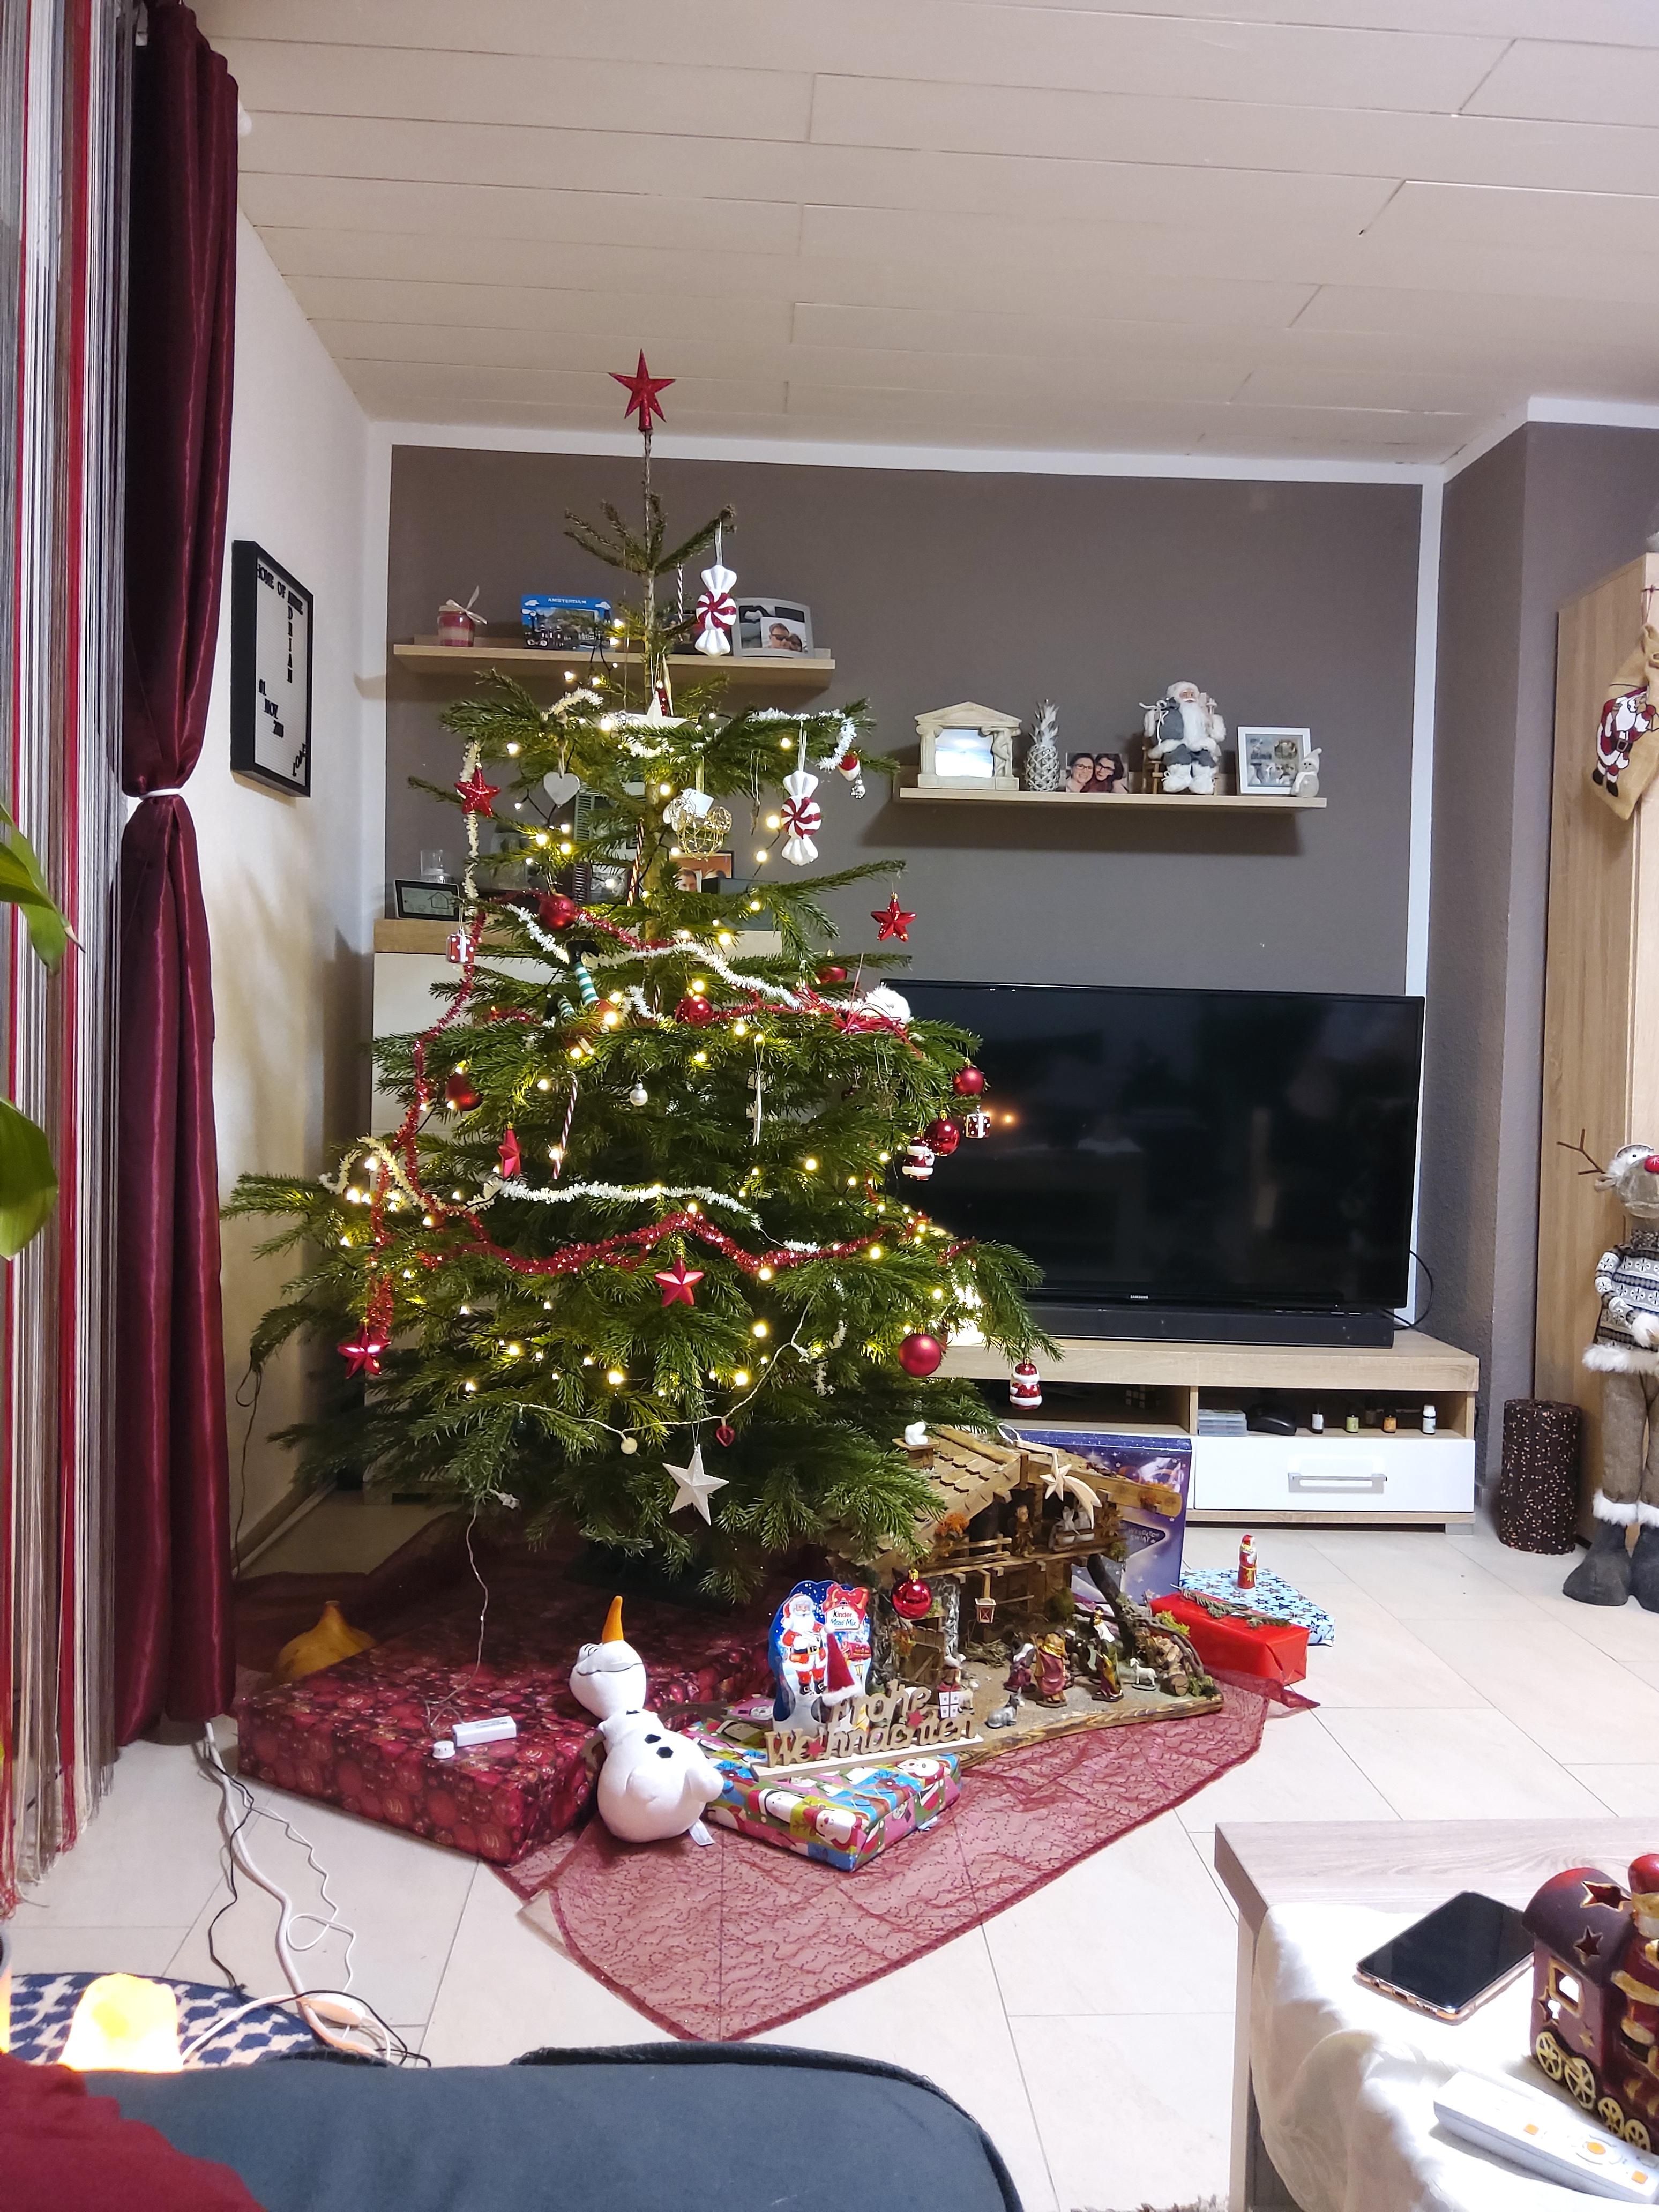 Etwas verspätet noch mein Weihnachtsbaum 😃